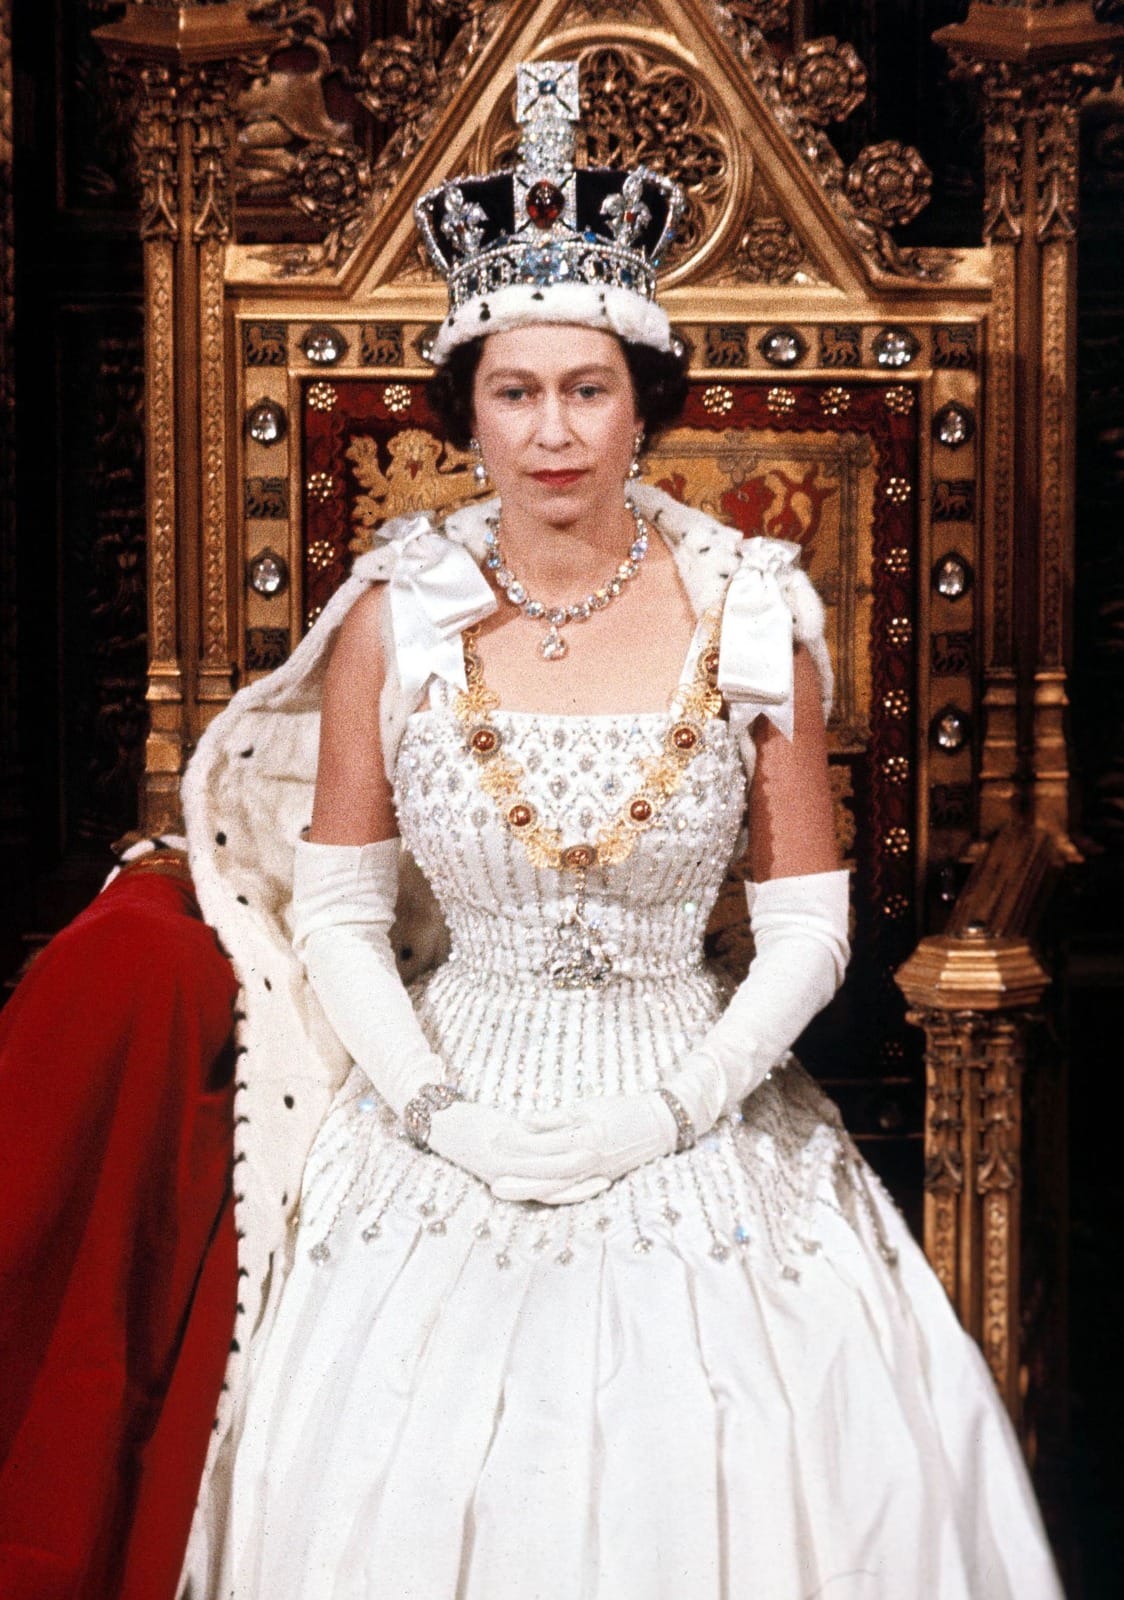 180826201828 17 Queen Elizabeth Ii Unfurled